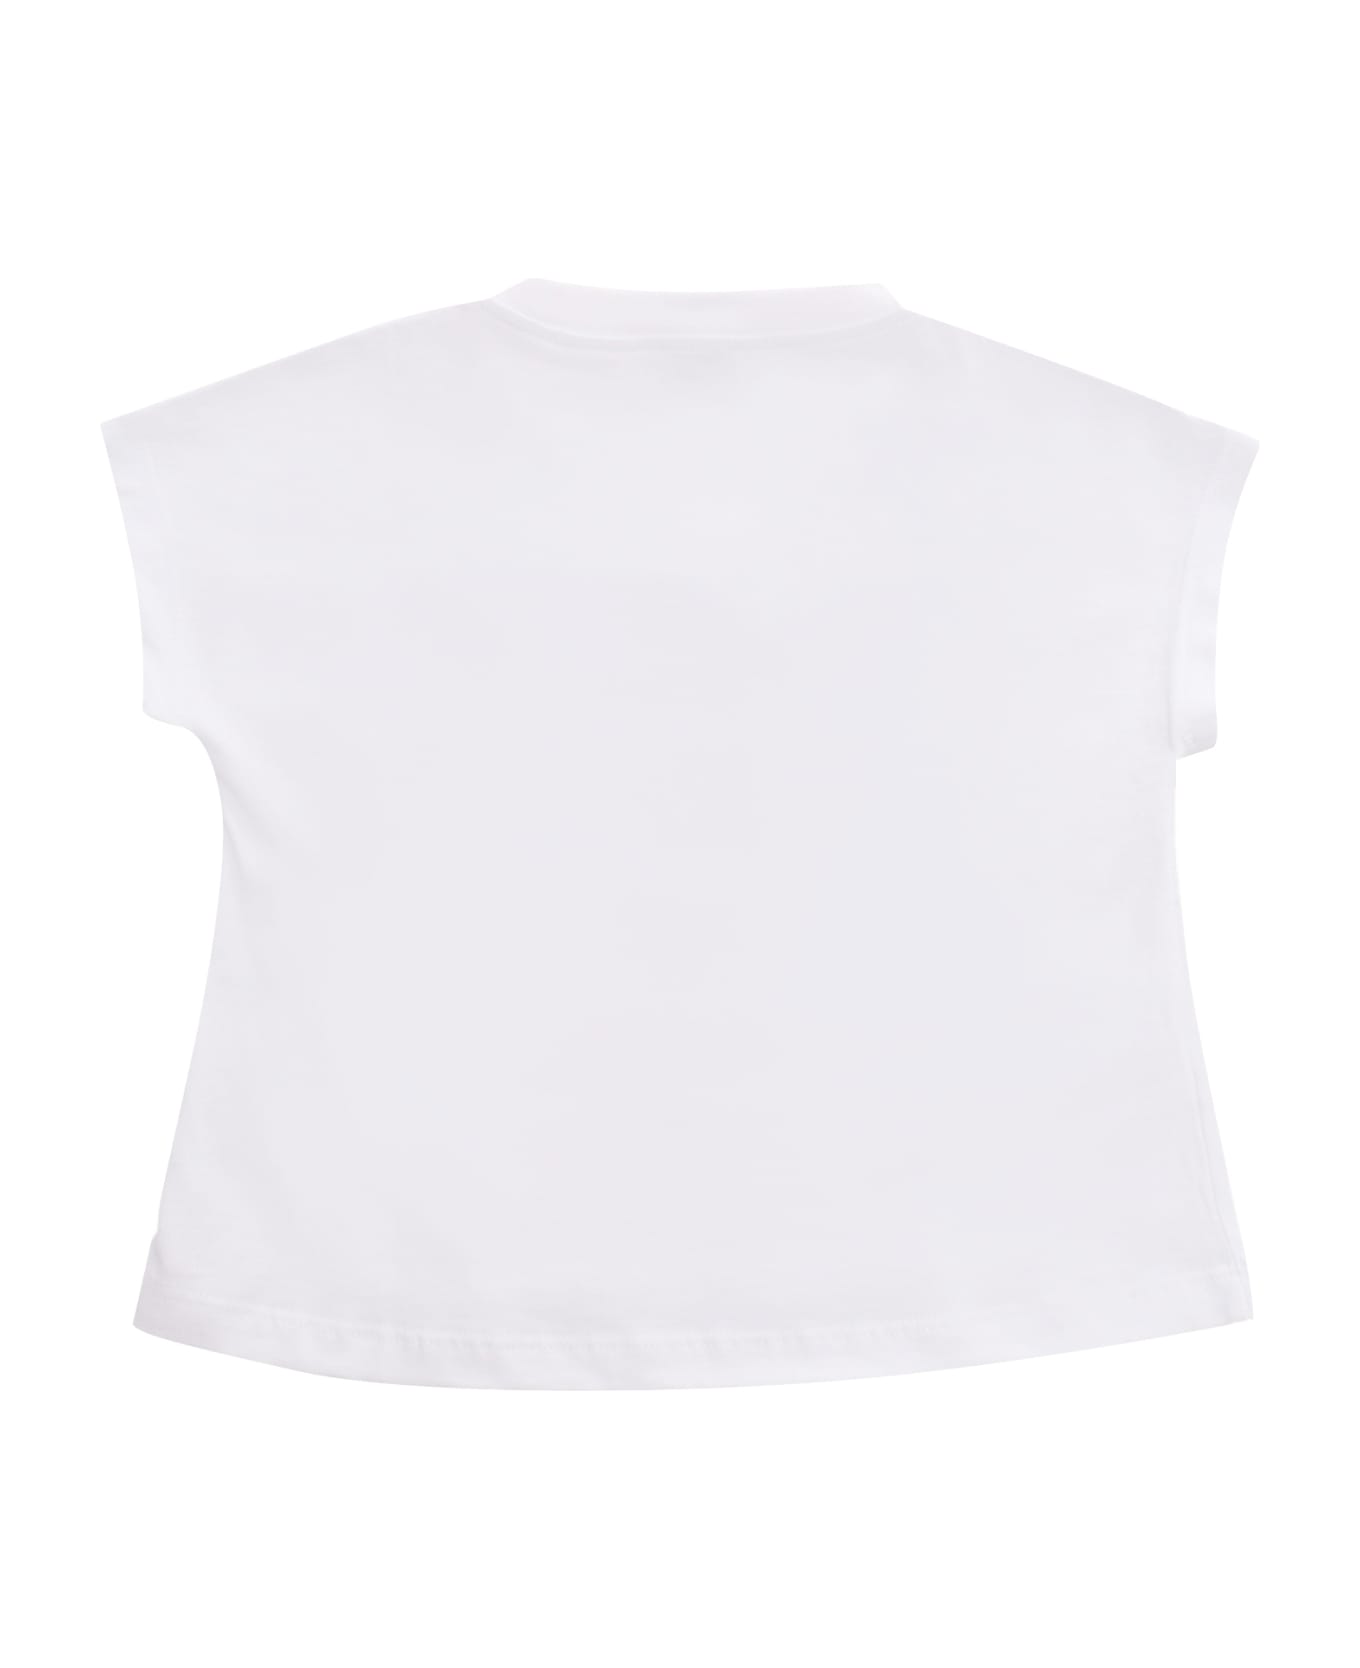 Il Gufo White T-shirt With Print - WHITE